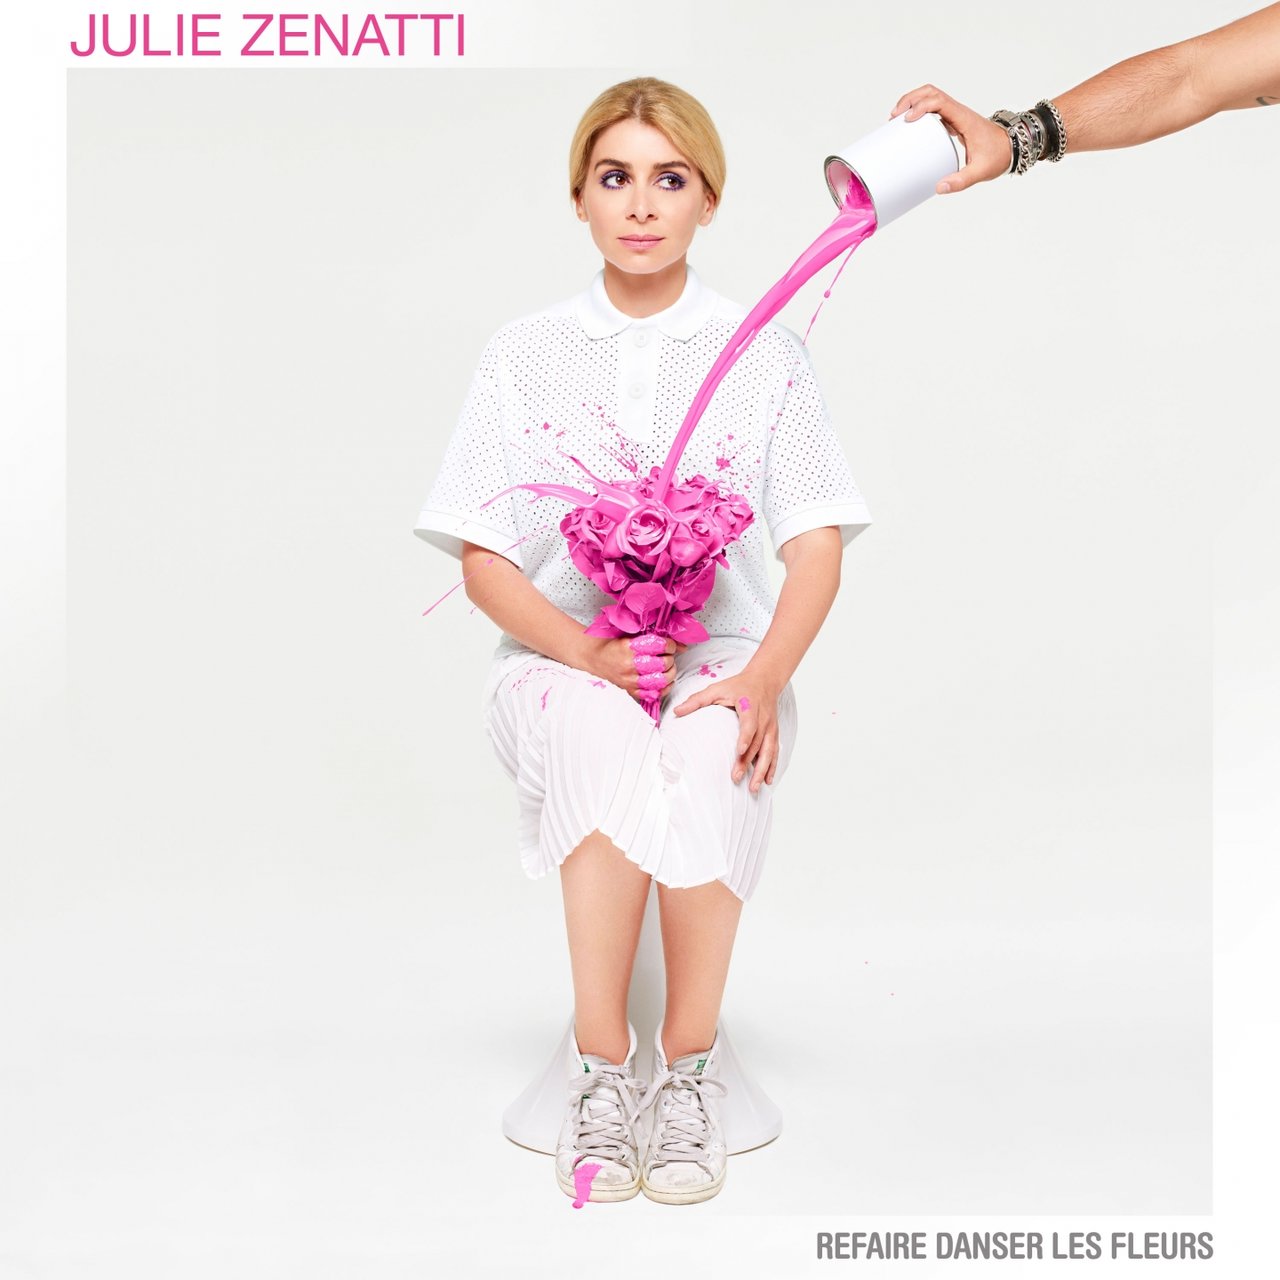 Julie Zenatti Refaire danser les fleurs cover artwork